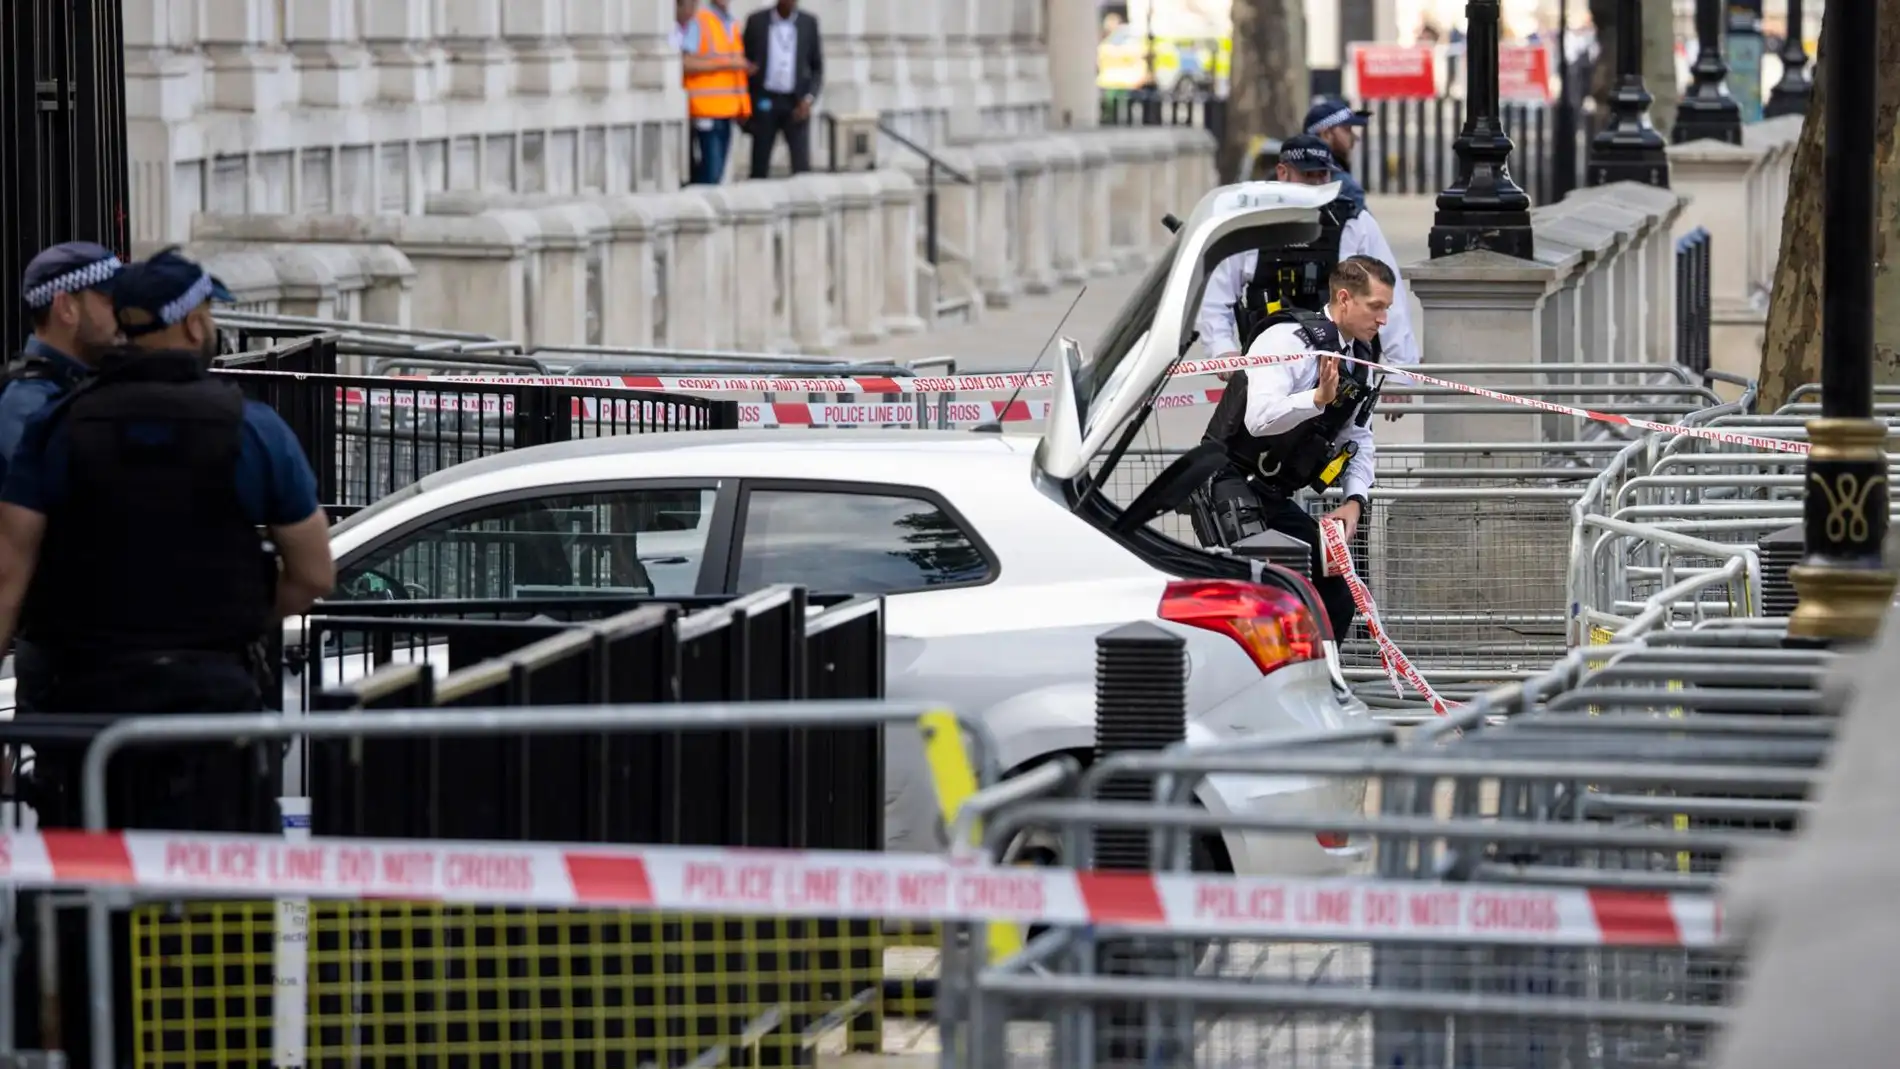 Un detenido por daños y conducción peligrosa tras colisionar su coche en Downing Street